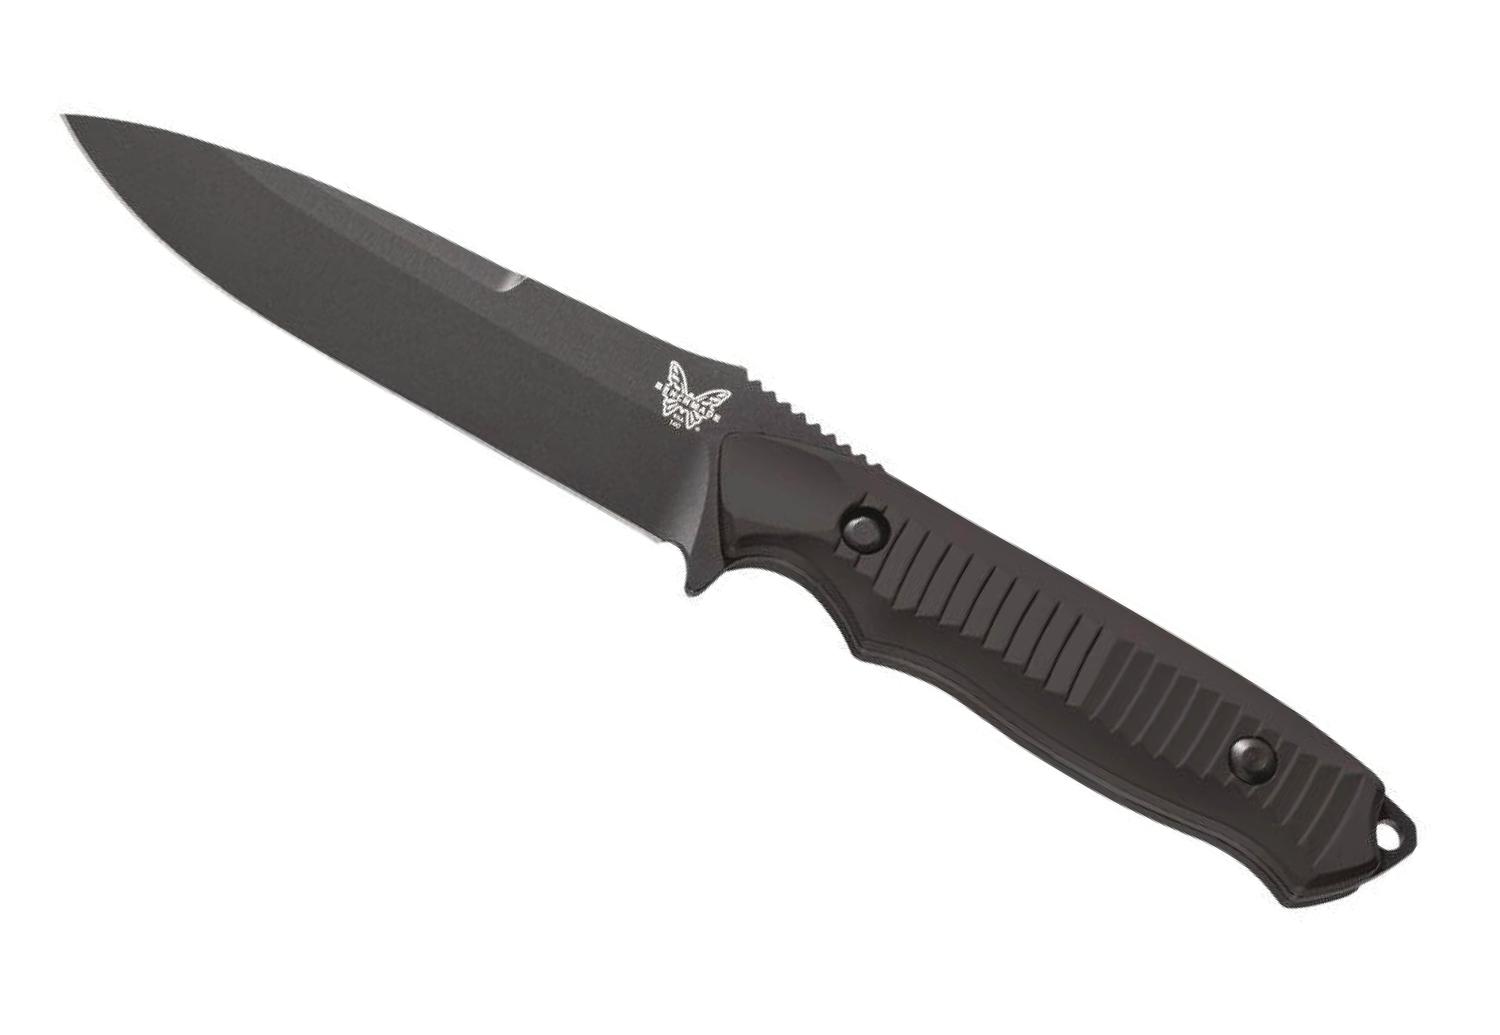  140 Nimravus Fixed Blade Knife 4.5in 154cm Black/Black